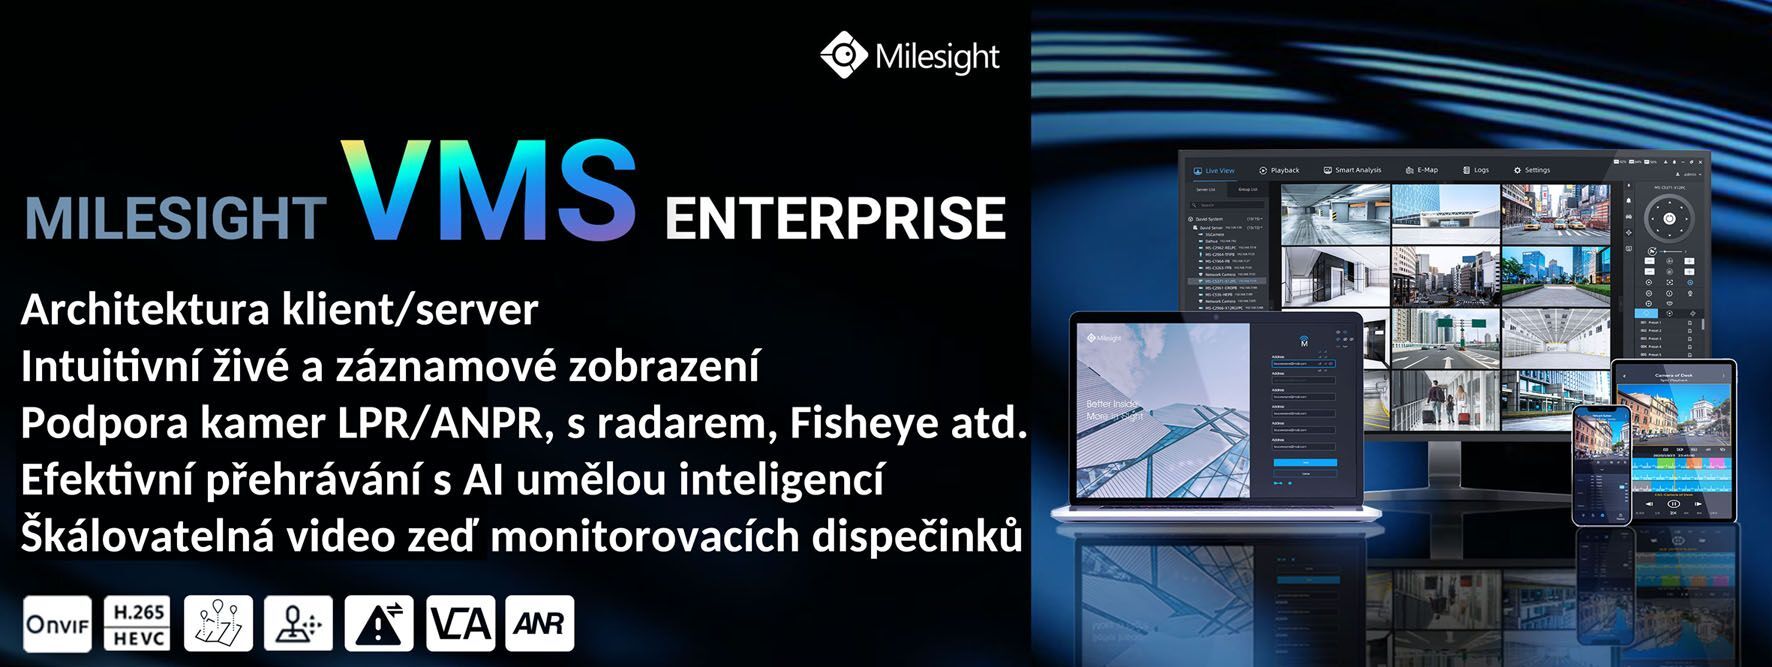 MS-MC-128 128CH Software VMS Enterprise